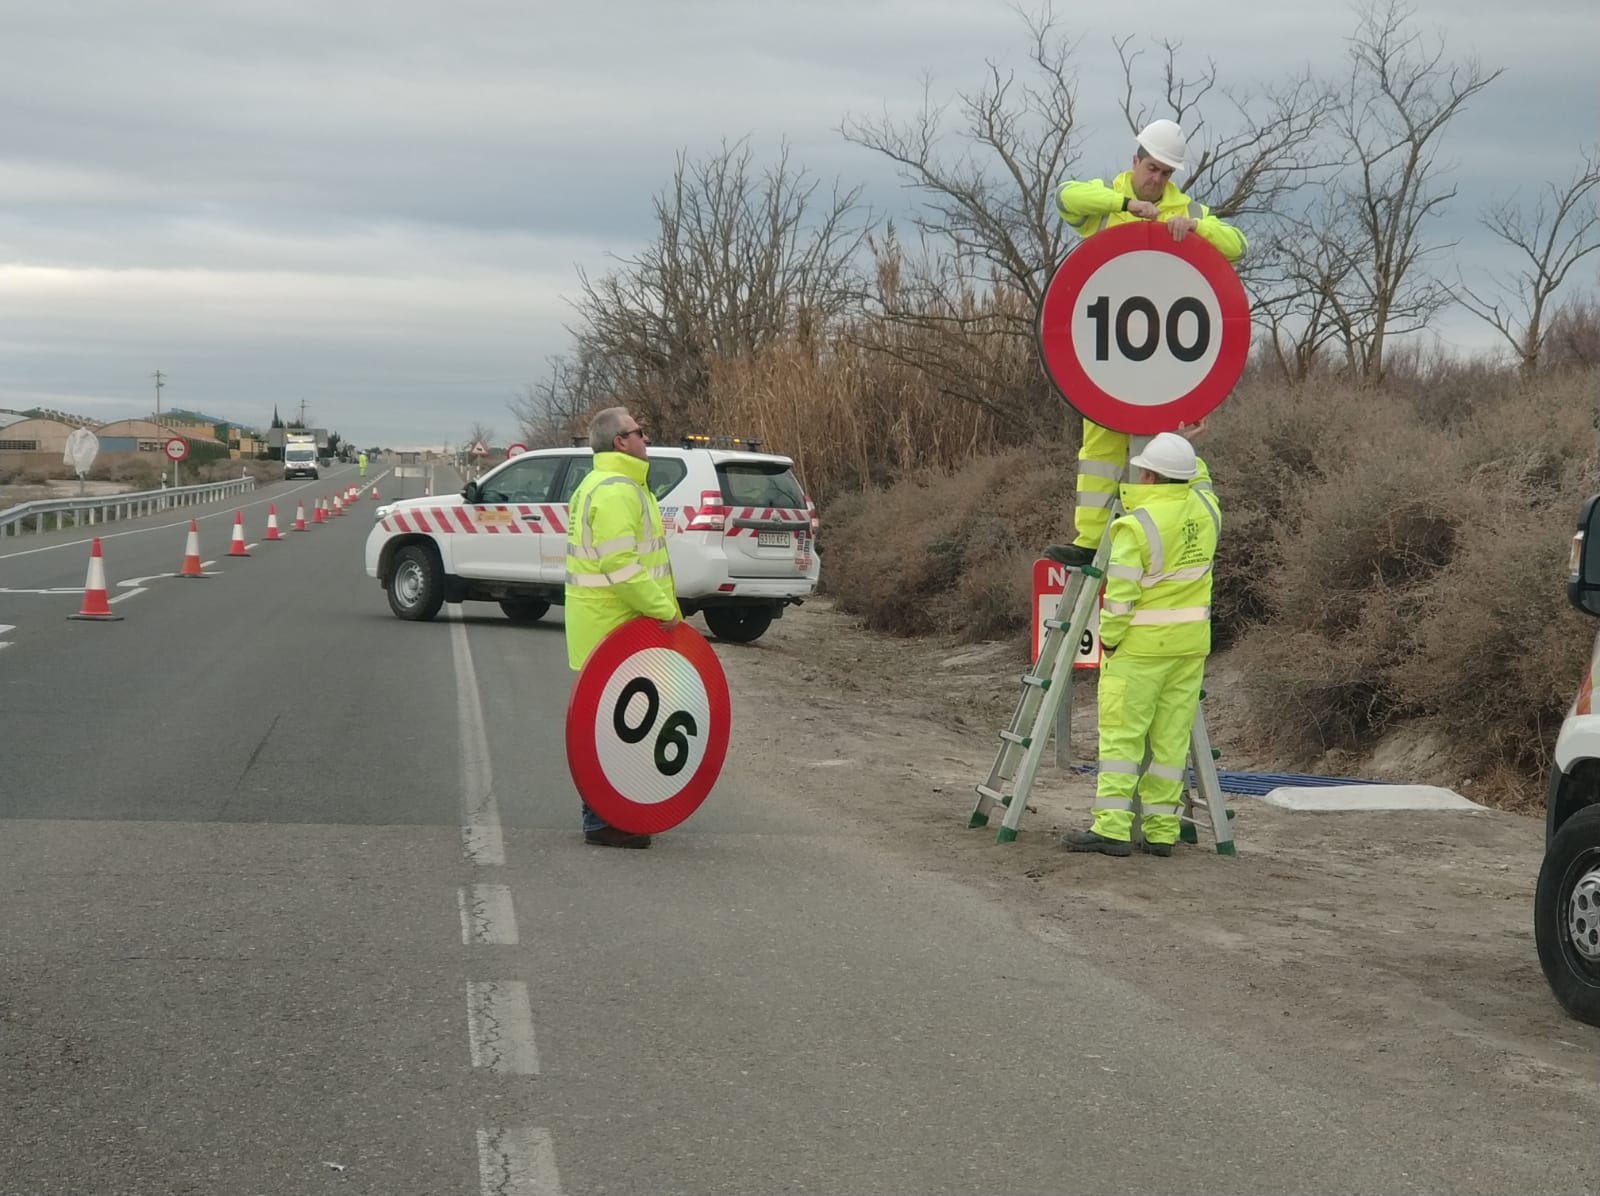 Aragón ultima el cambio de señalización de 100 km/h a
90 km/h en las carreteras convencionales
